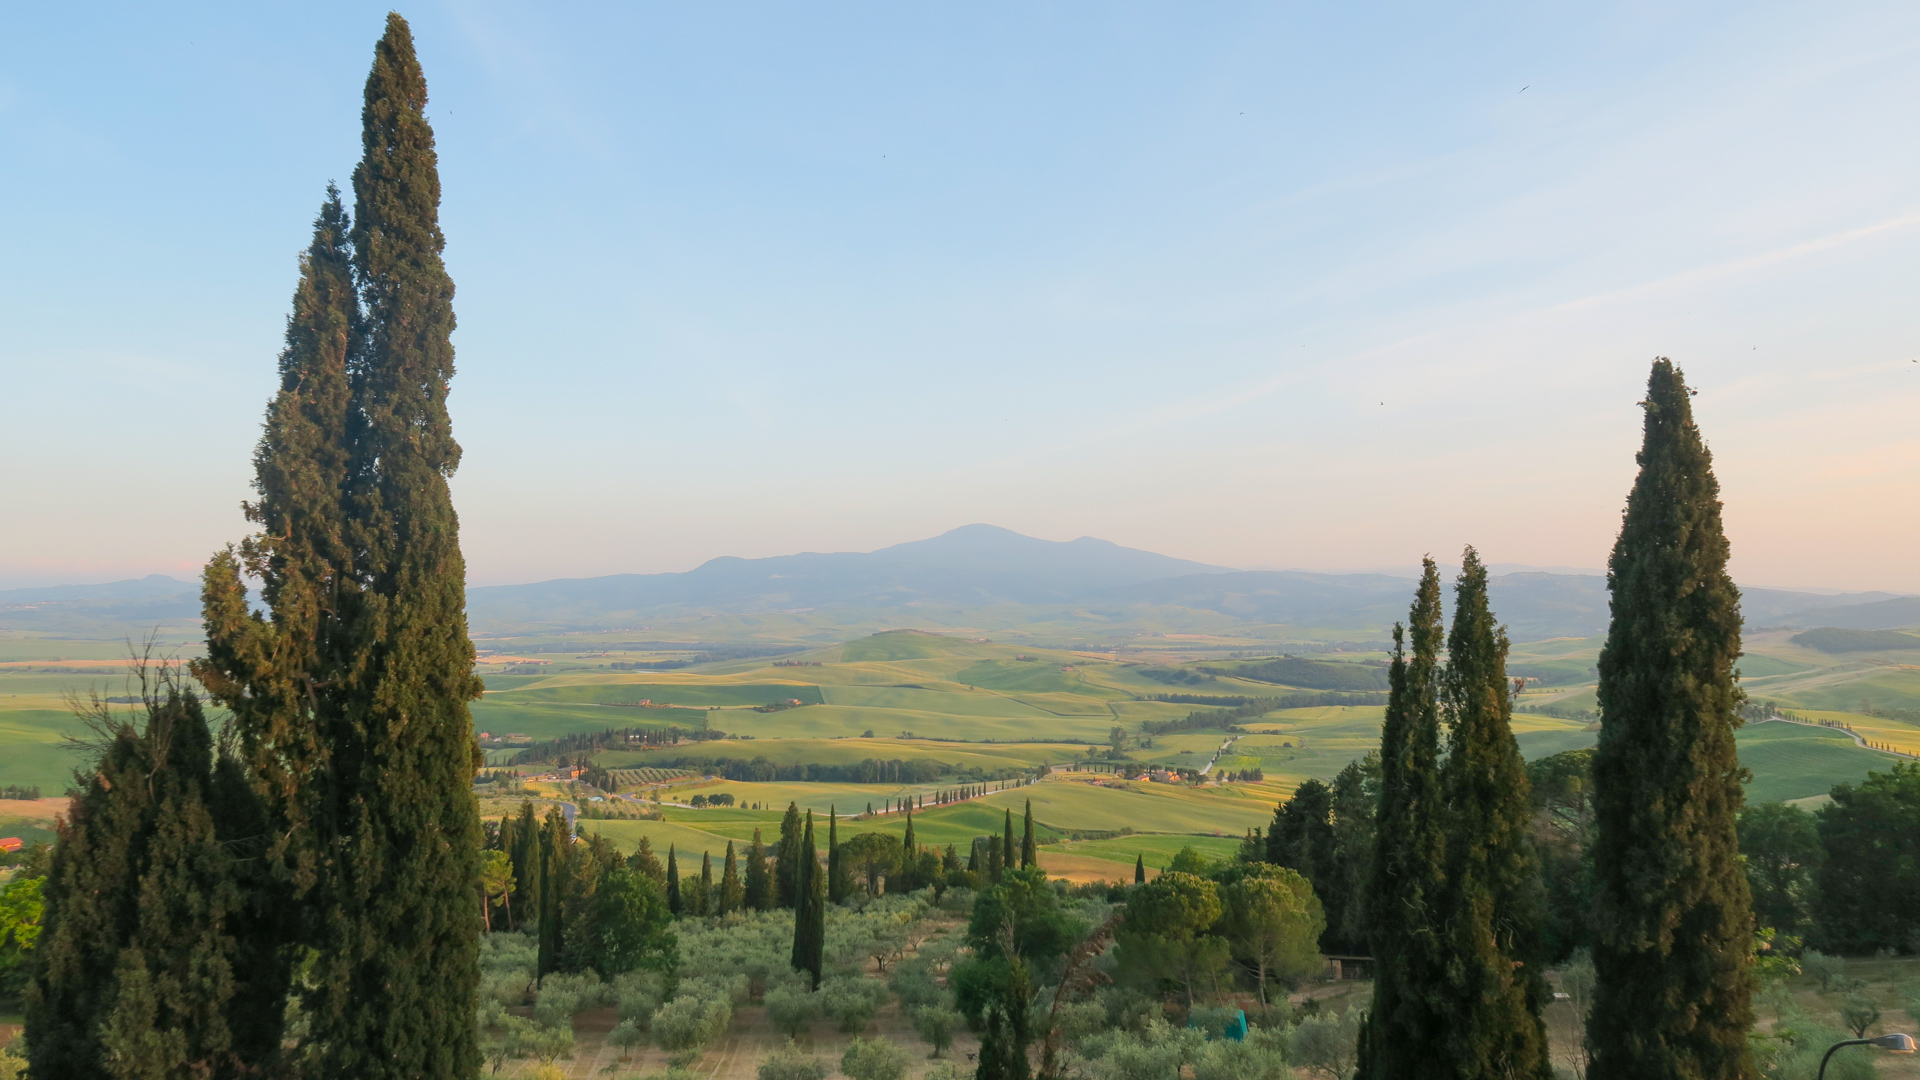 Paysage typique de la Toscane, collines et allées de cyprès